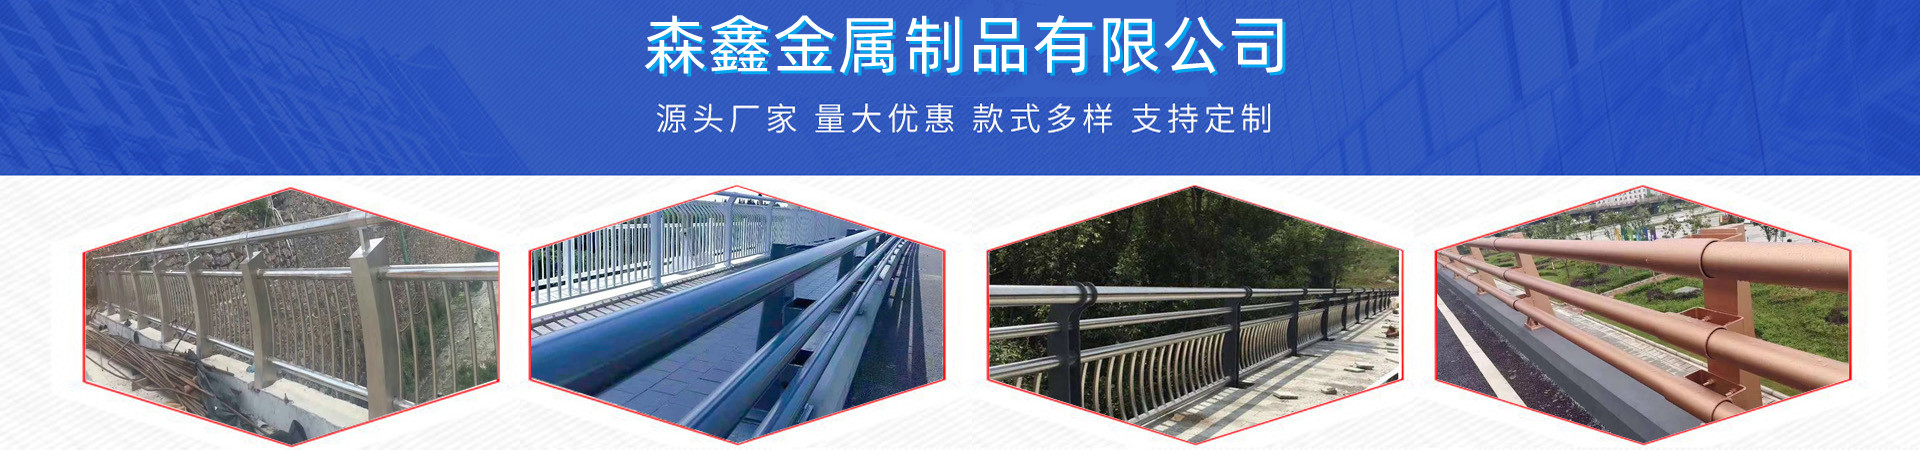 不锈钢复合管护栏厂家、杭州本地不锈钢复合管护栏厂家、杭州、杭州不锈钢复合管护栏厂家